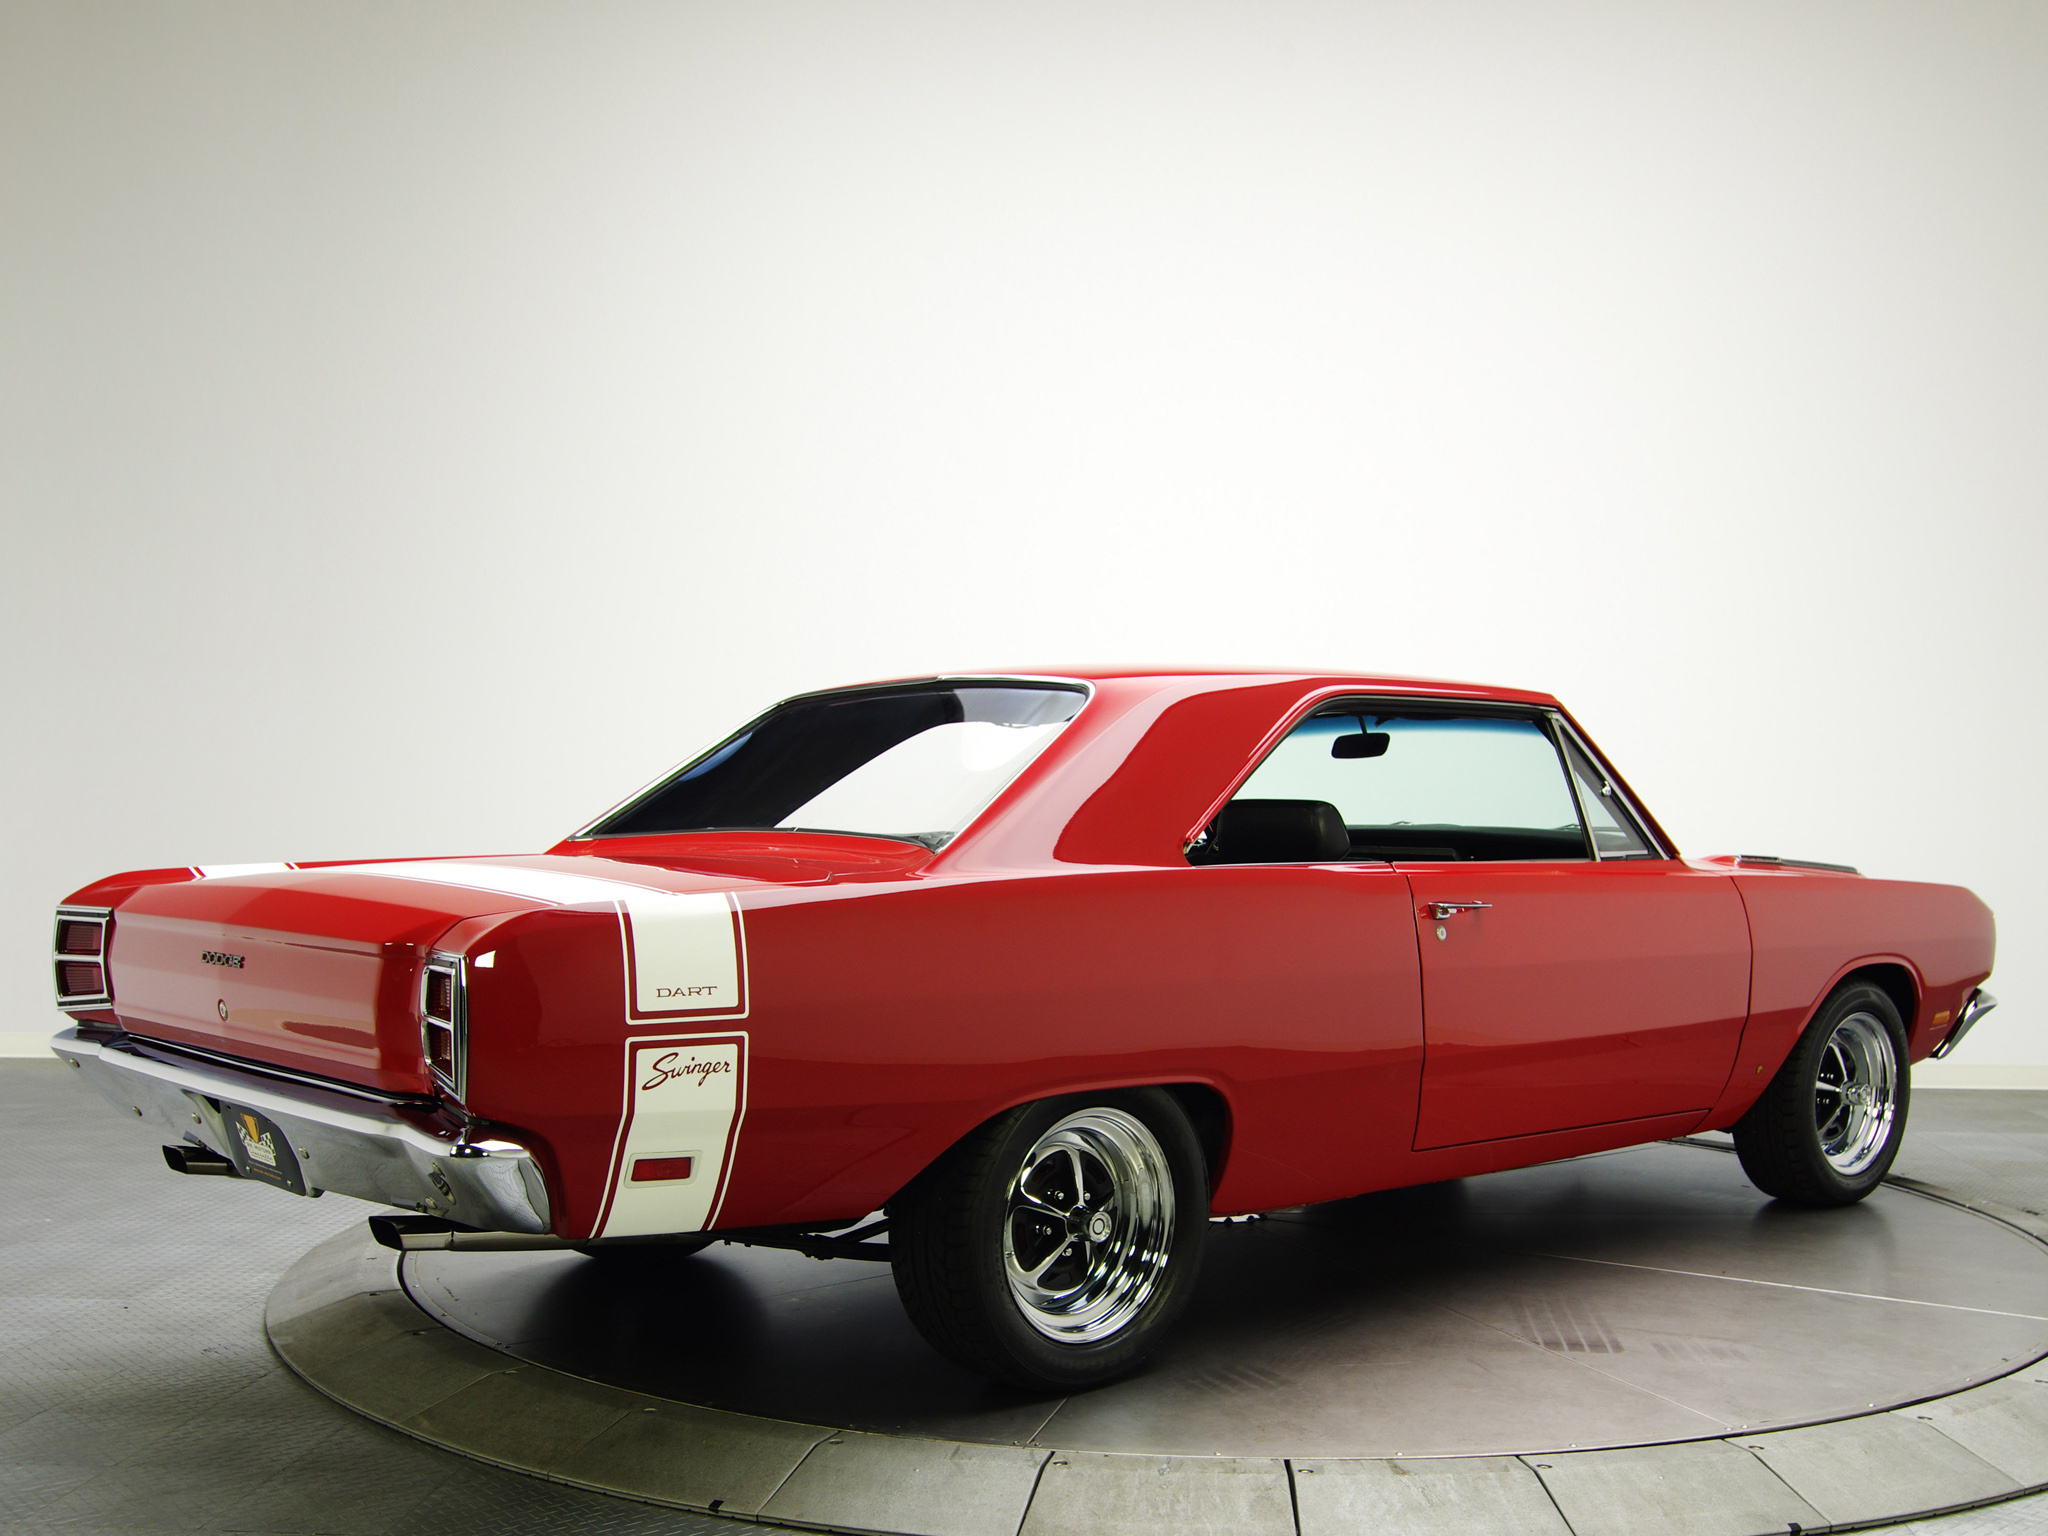 Dodge Dart, Muscle classic beauty, Iconic 1969 model, Striking wallpaper, 2050x1540 HD Desktop